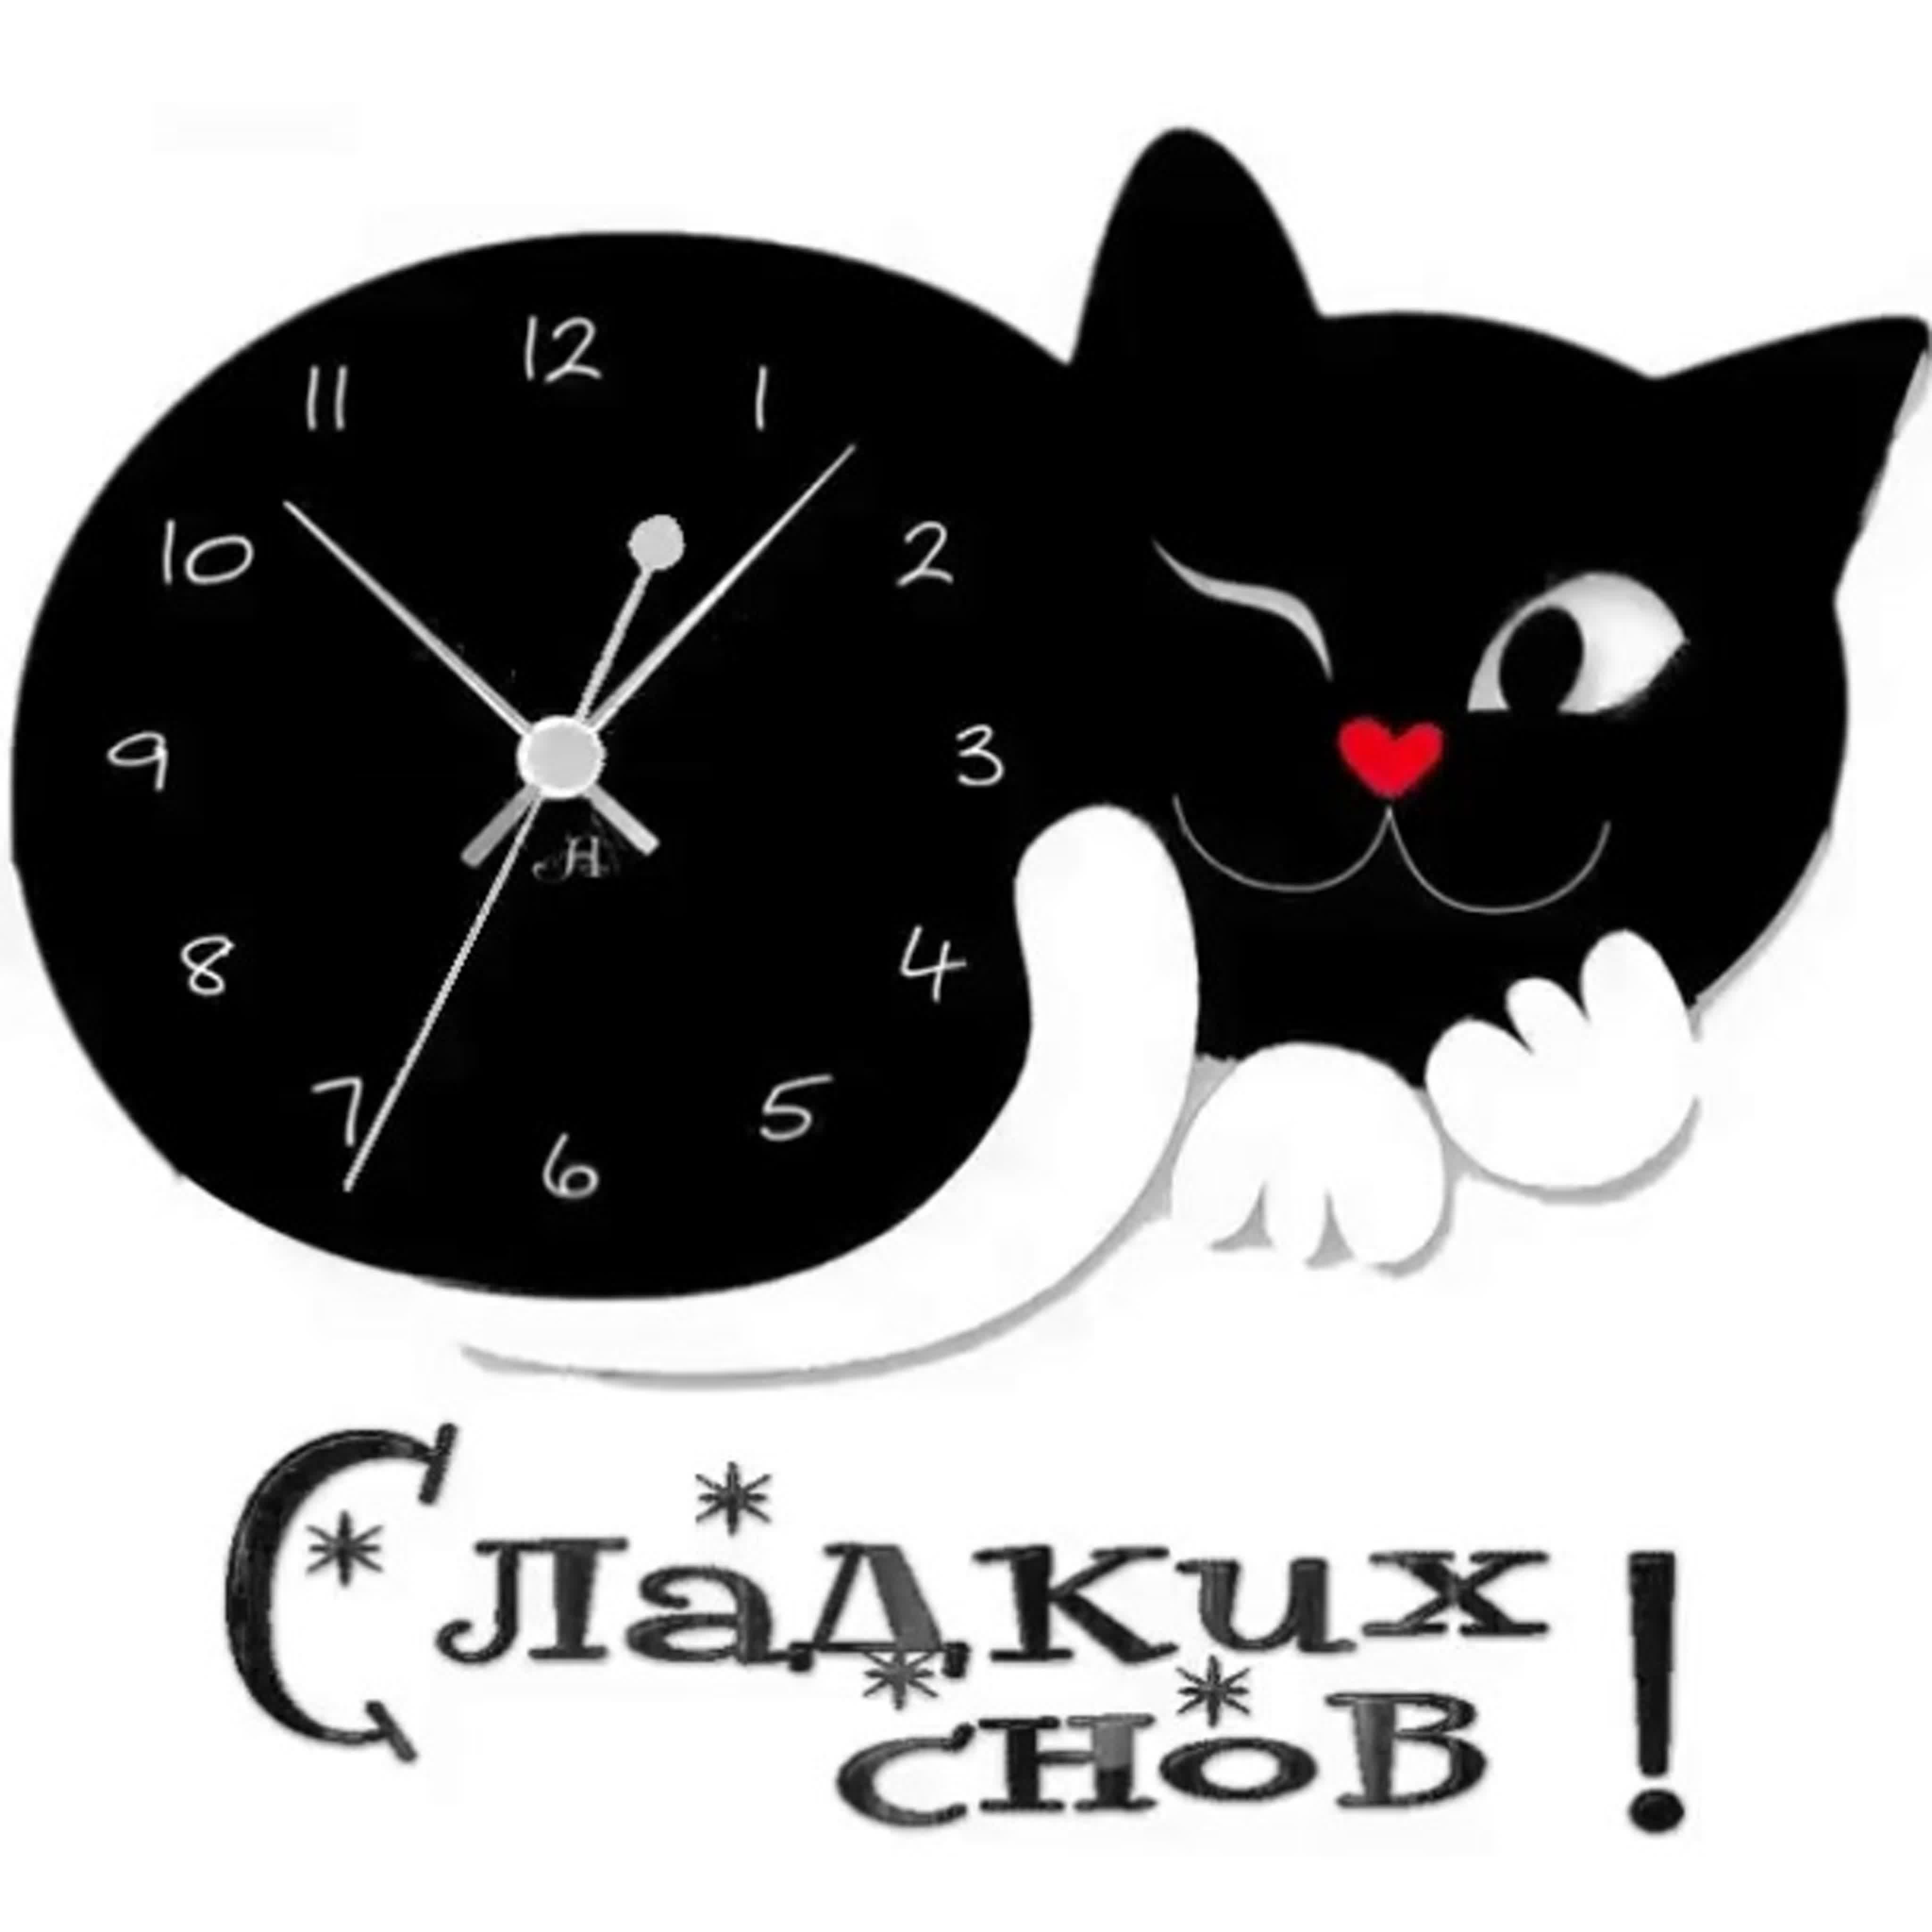 Спокойной час. Часы. Часы с котом настенные. Часы в виде котиков. Часы в форме кота настенные.